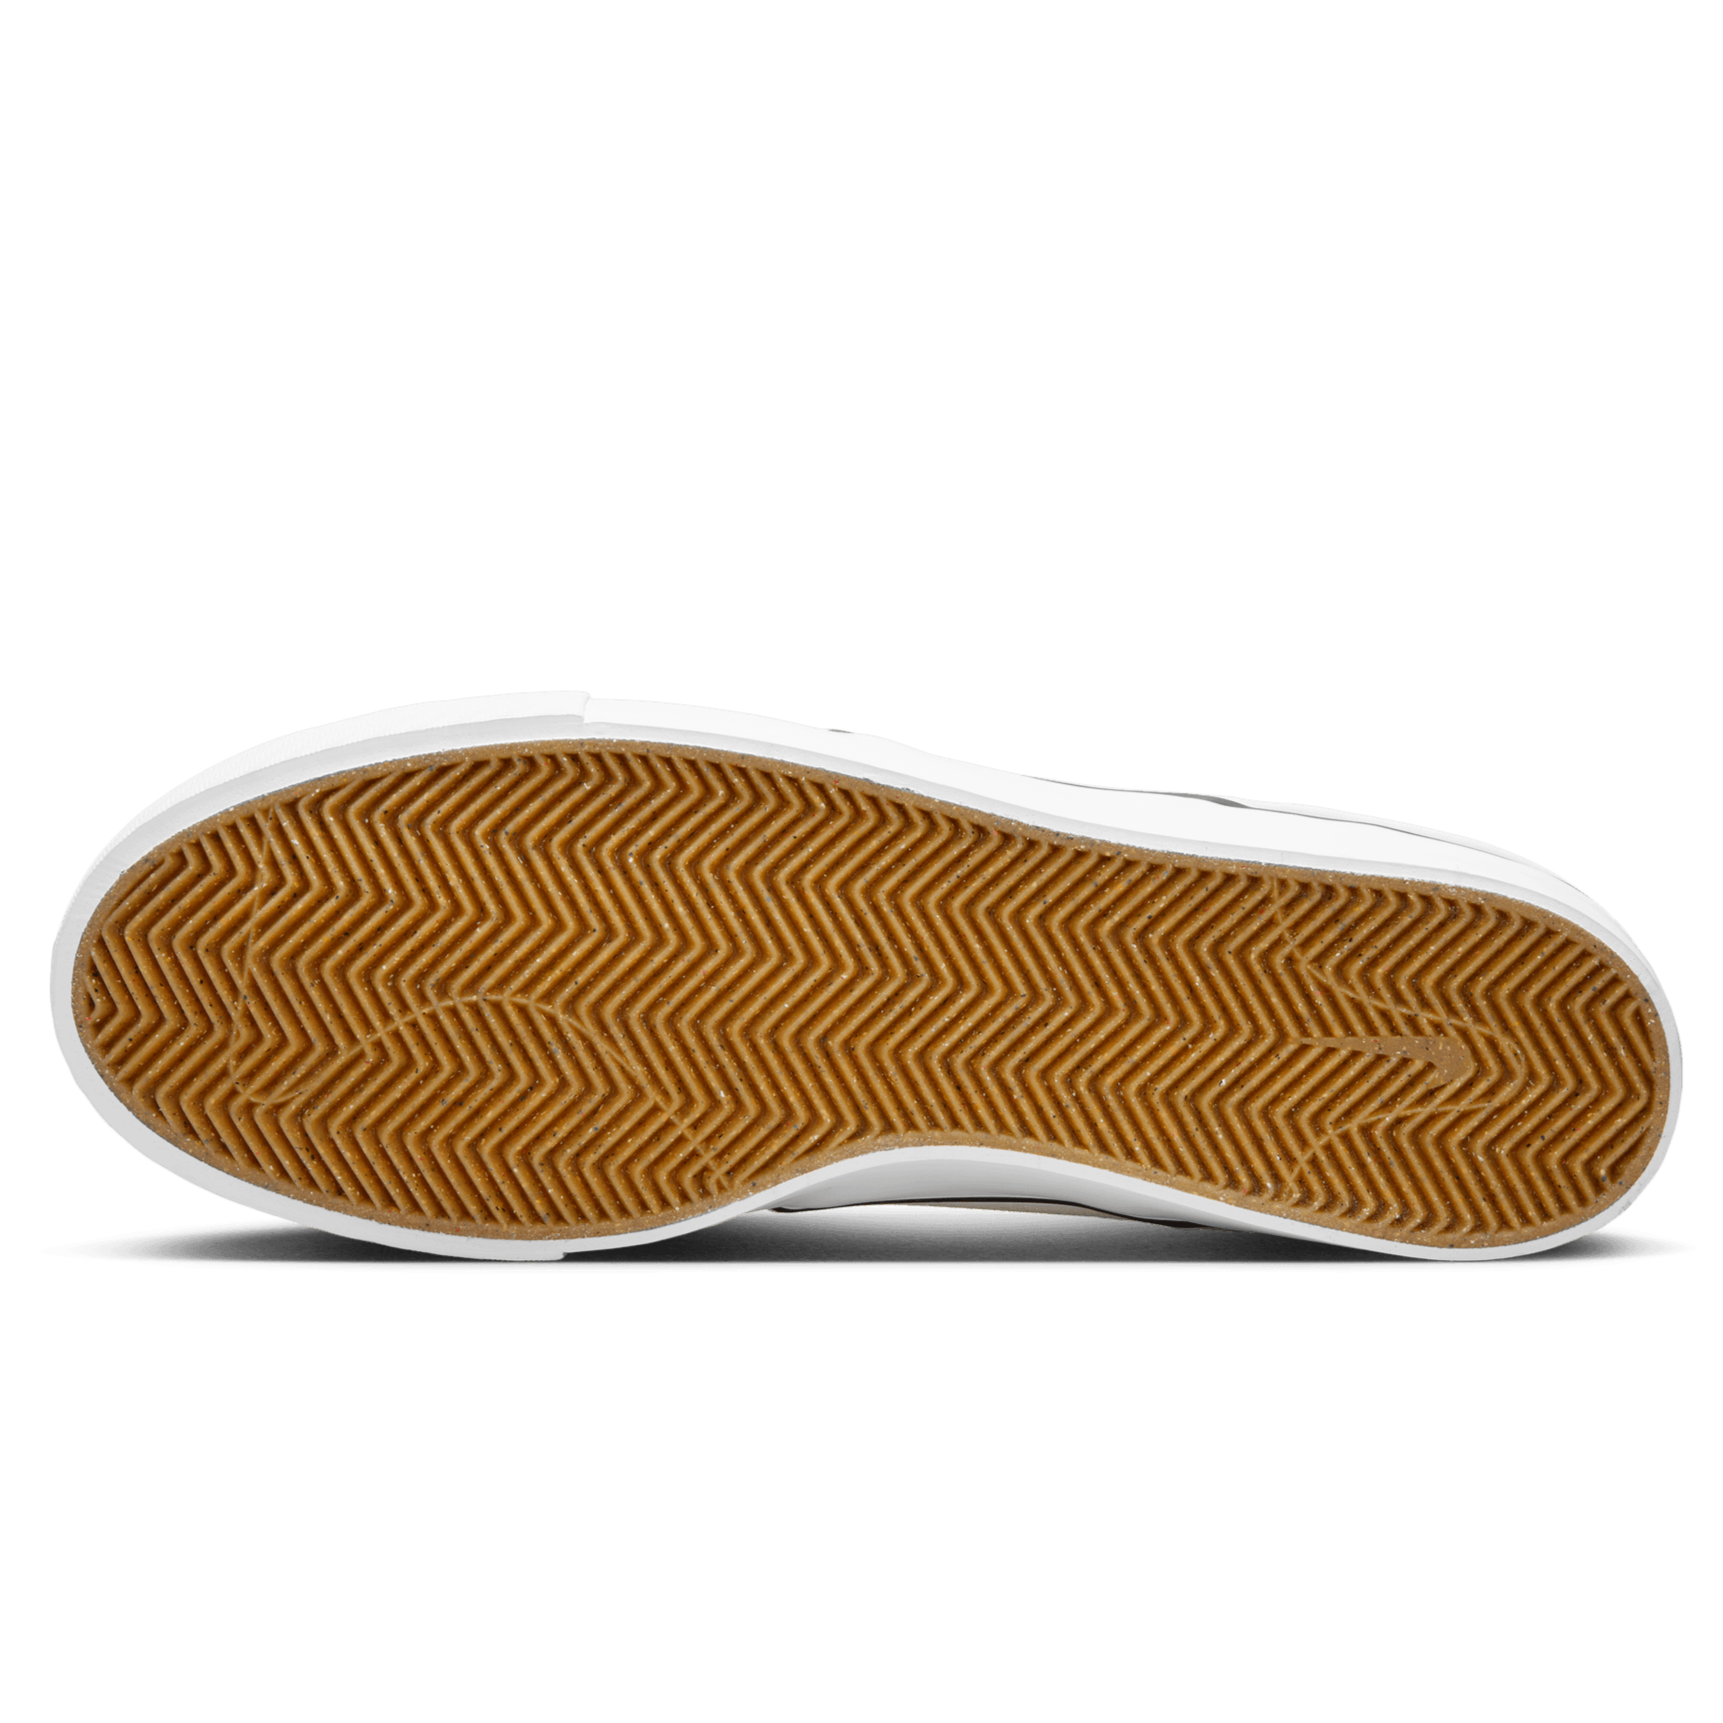 Summit White OG+ Nike SB Janoski Skate Shoe Bottom